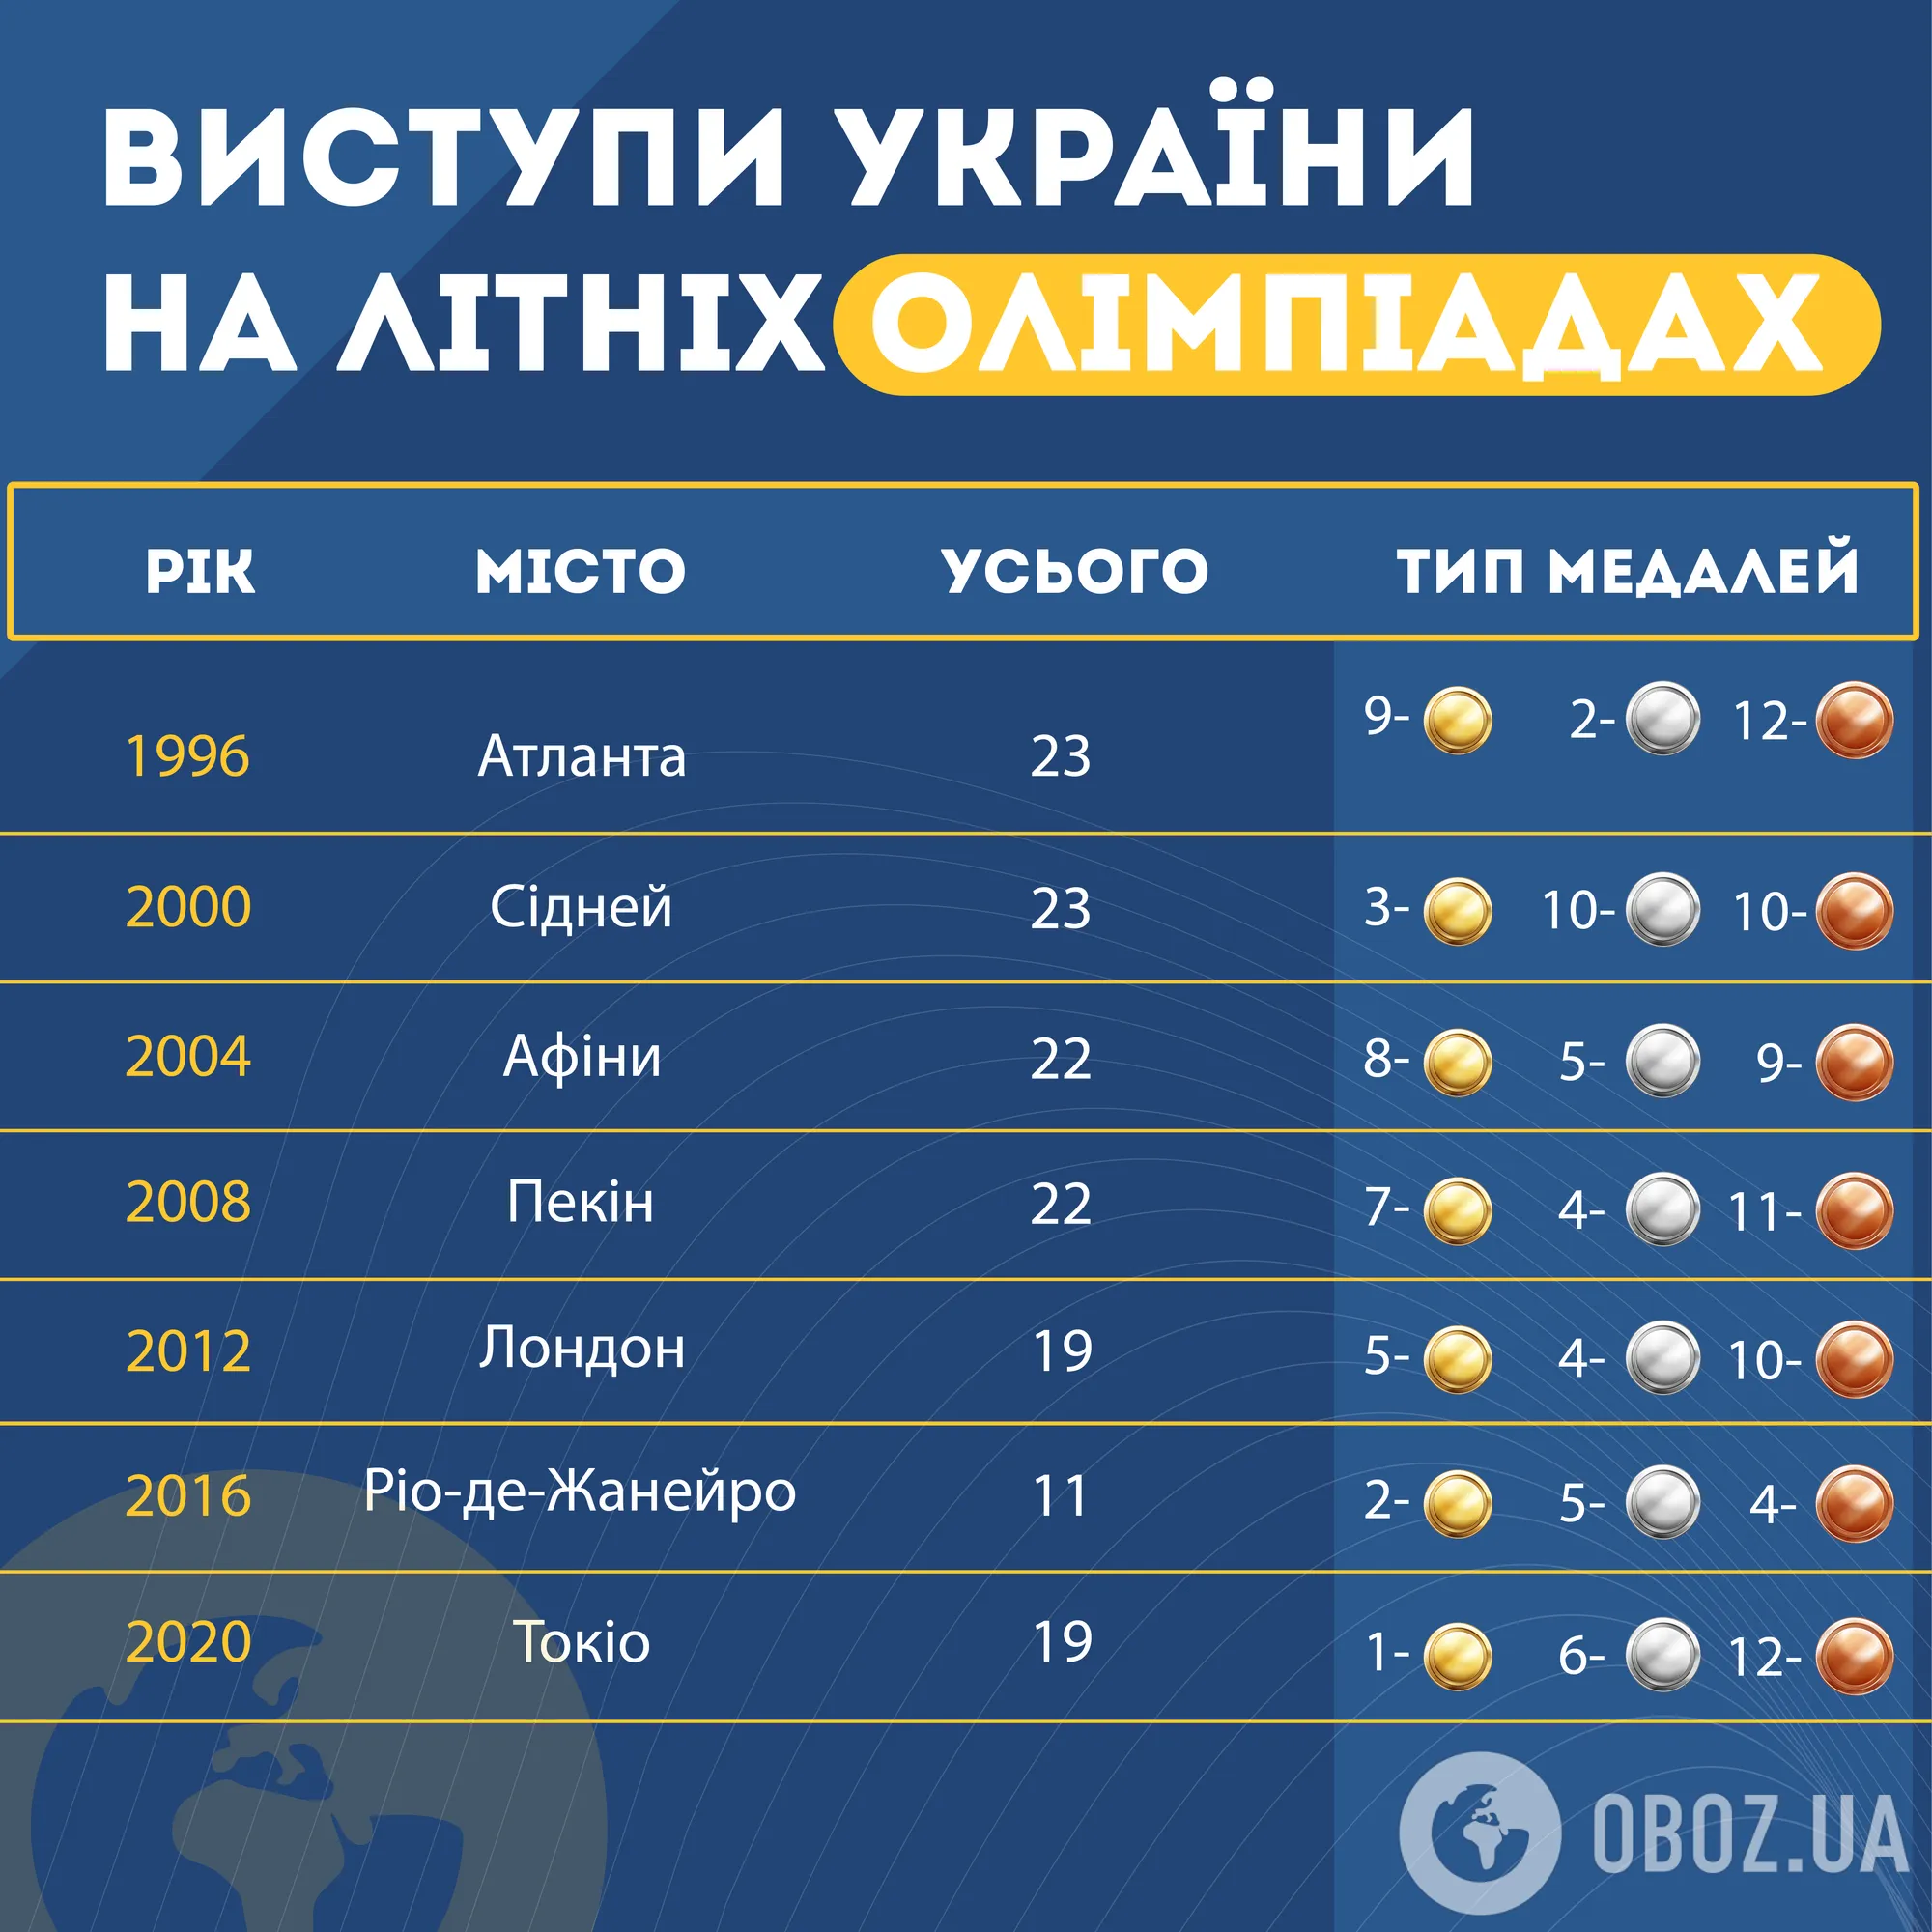 Брейк-данс, футбол та понад 20 видів спорту. Як Олімпіада-2024 може стати найрезультативнішою для України